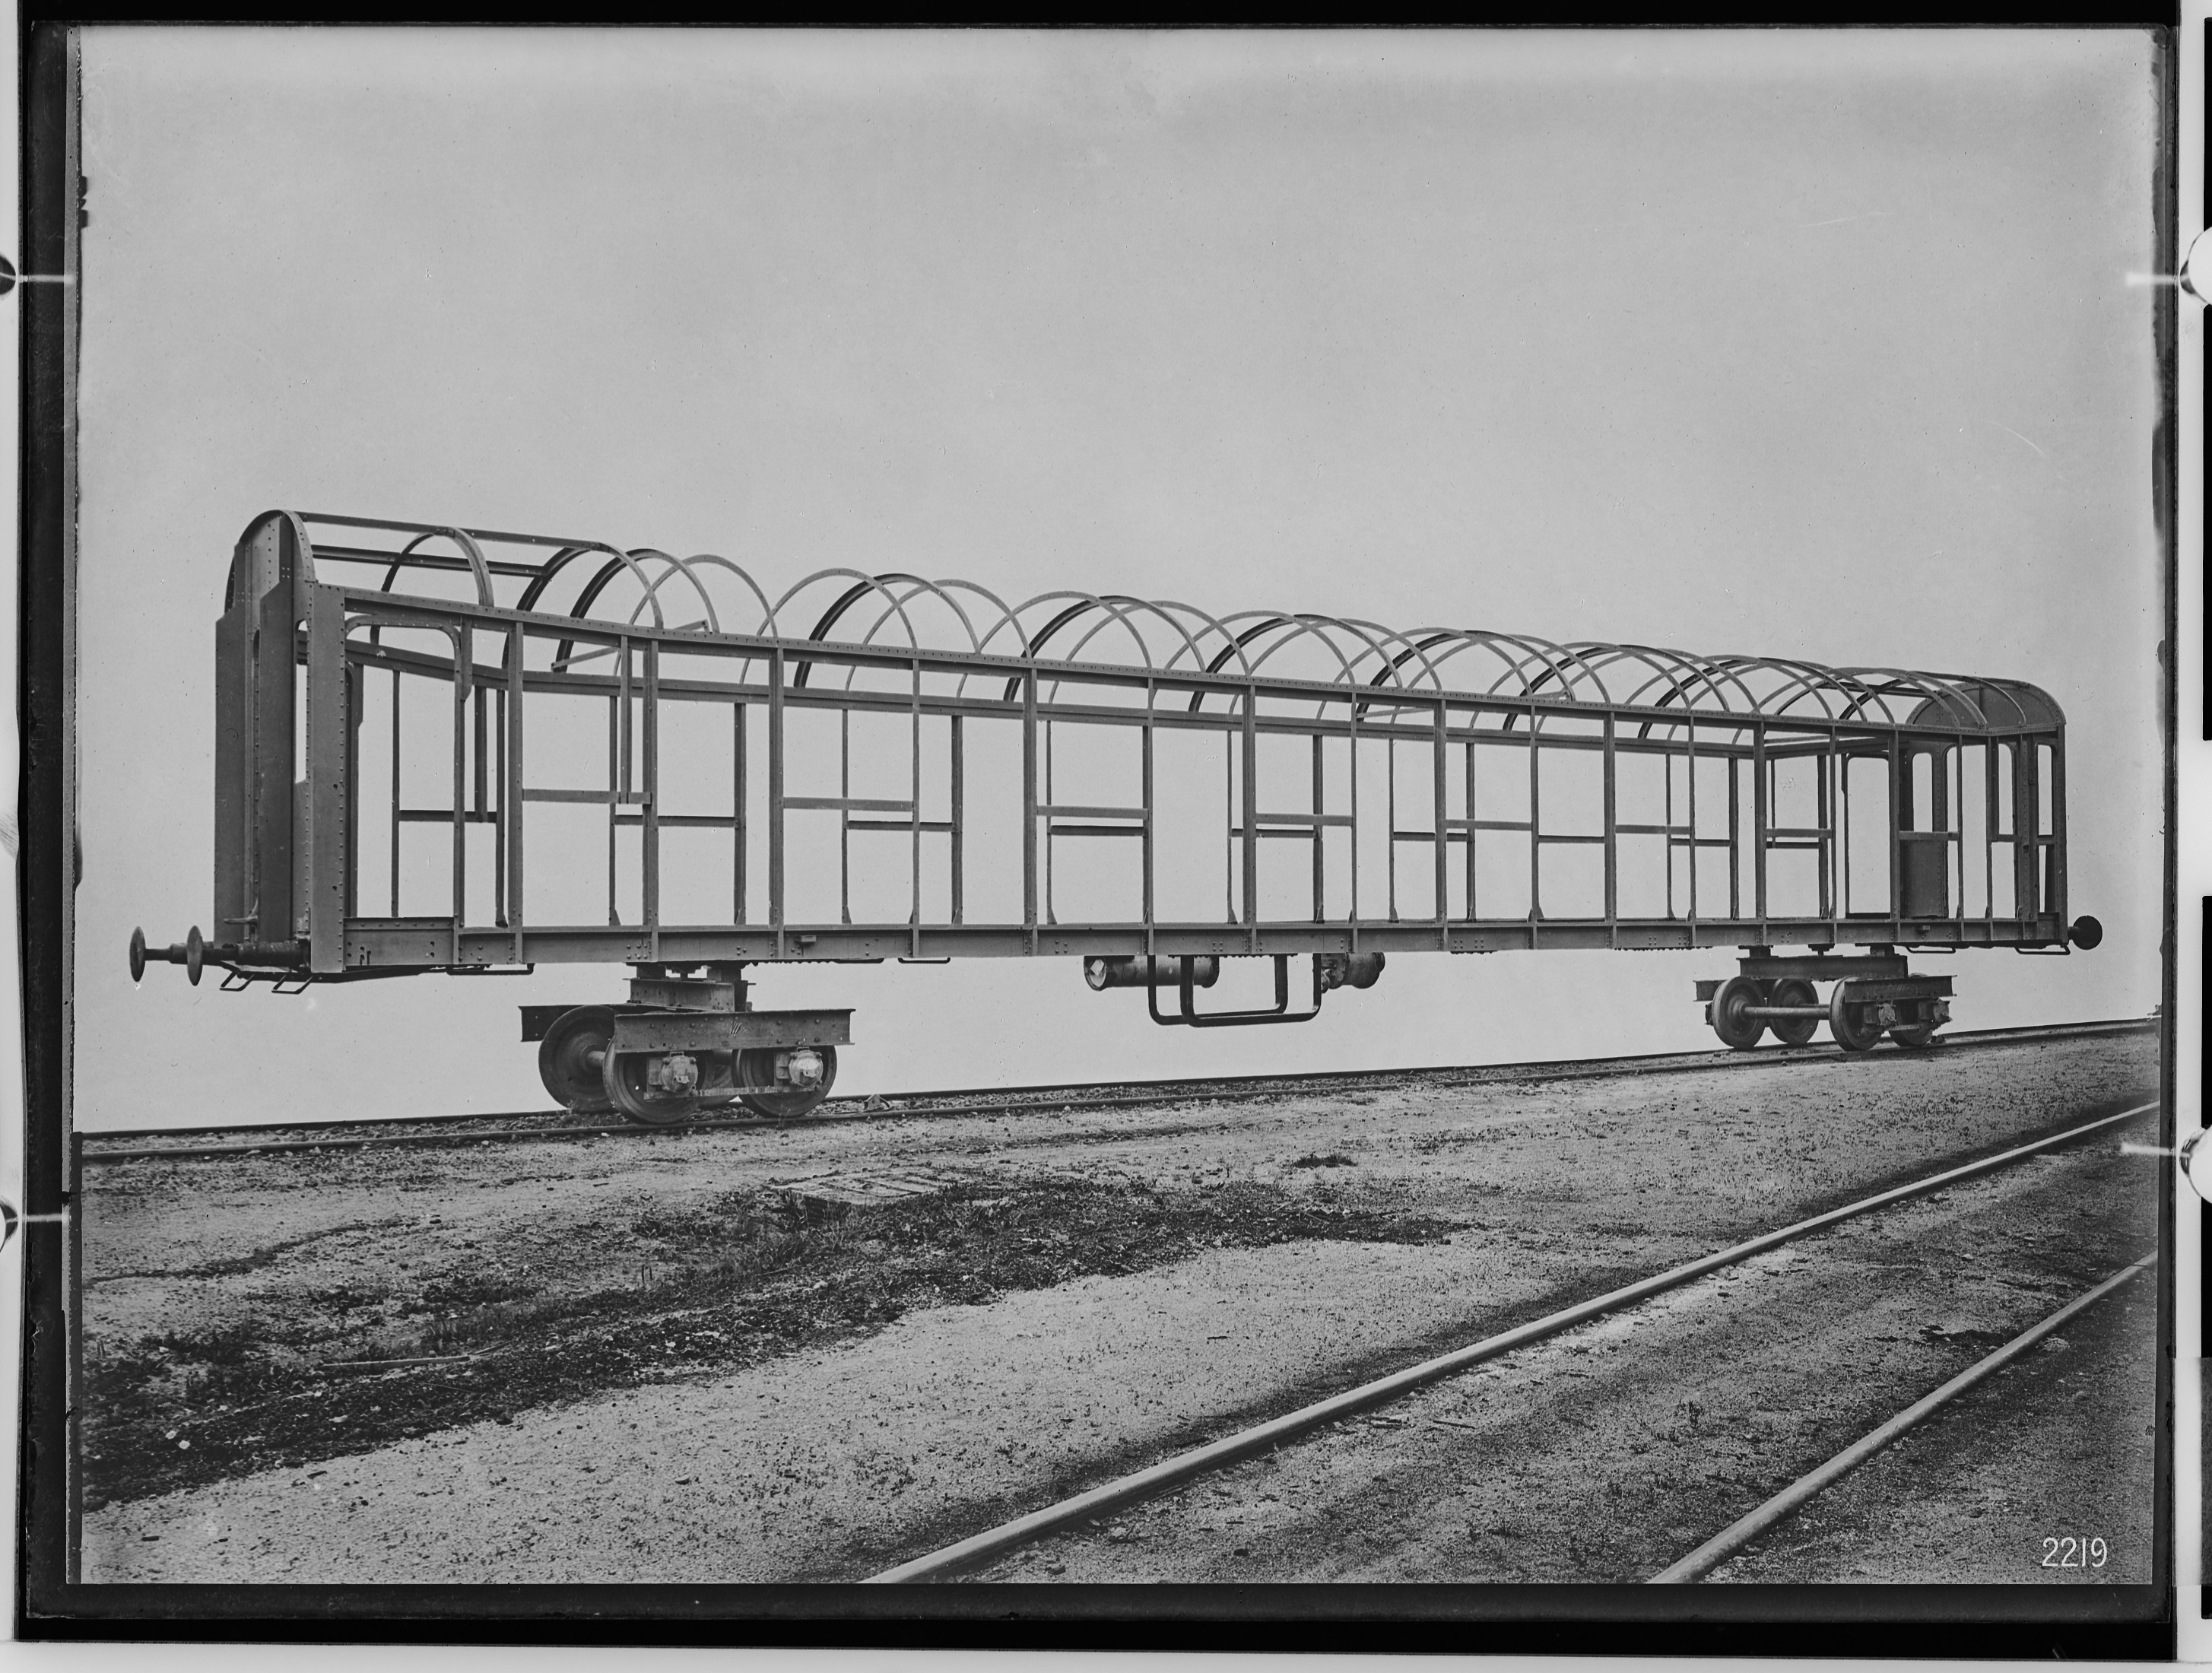 fotografie-vierachsiger-d-zugwagen-erste-klasse-fuer-rumaenien-kastengerippe-1923-11958.jpg